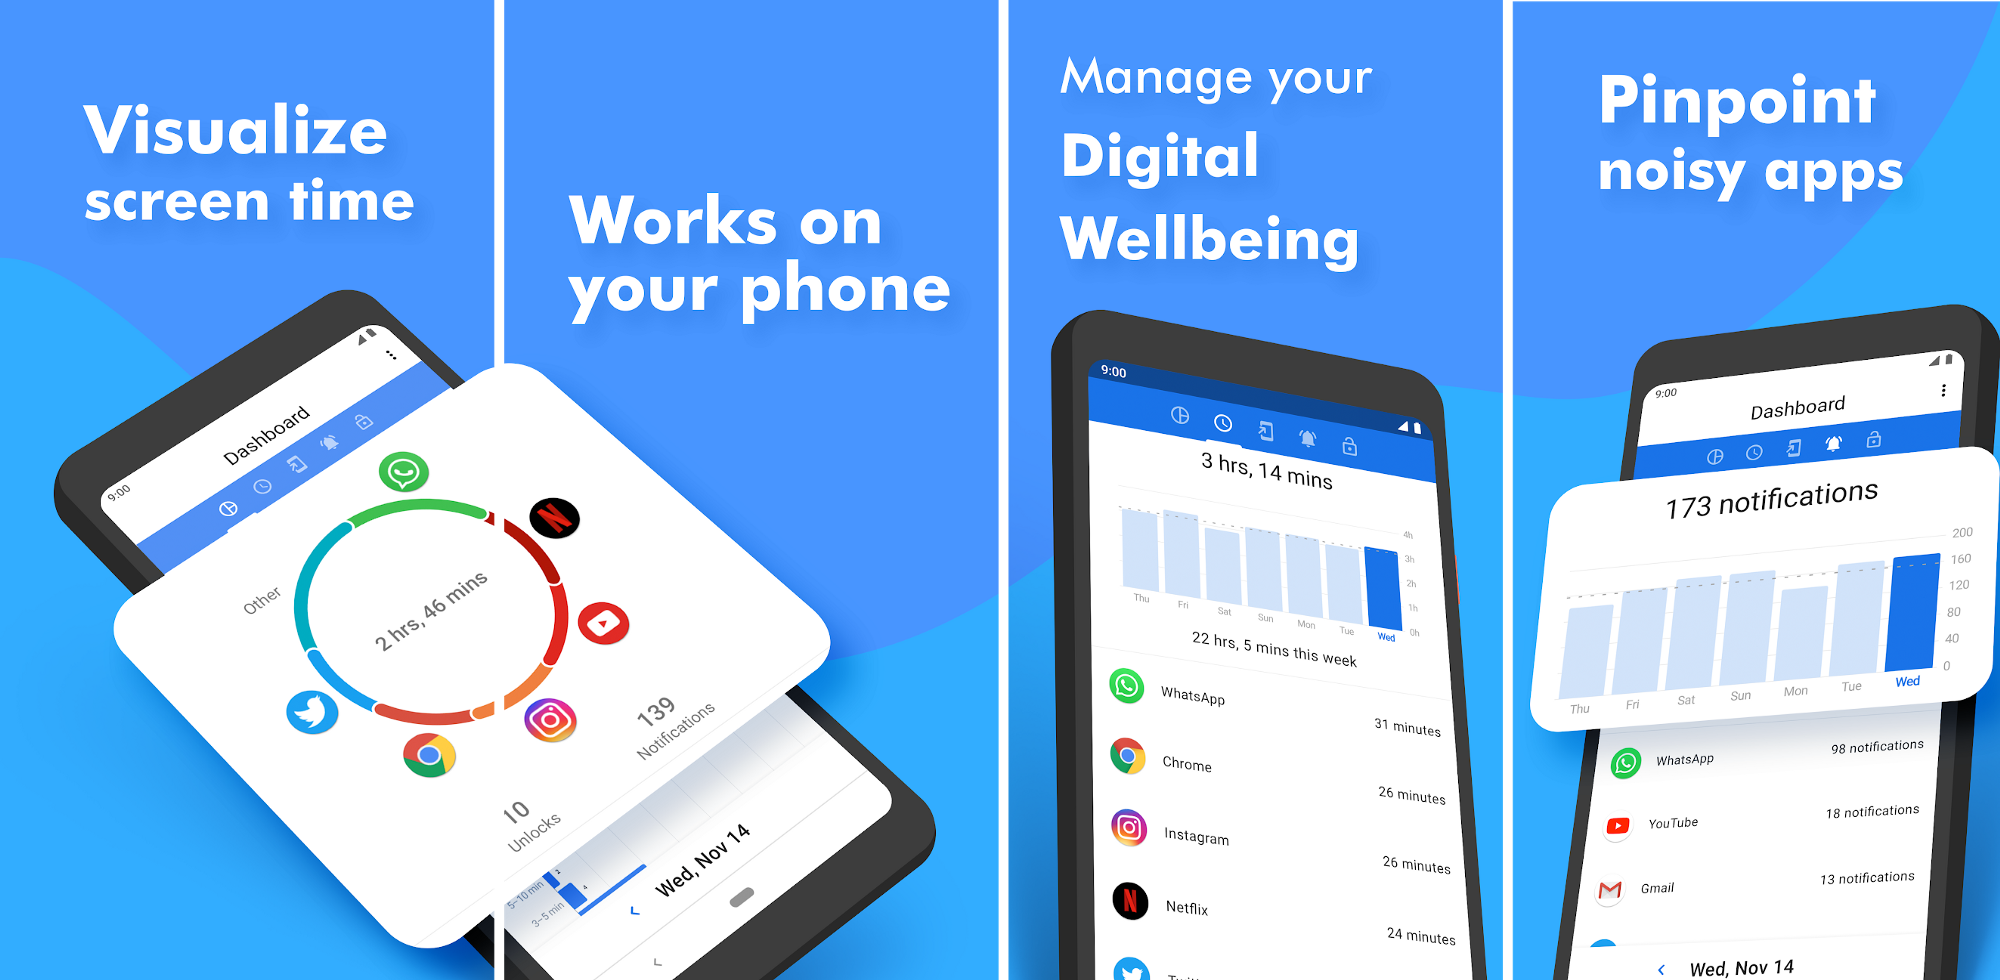 تطبيق ActionDash يأتي بأدوات Digital Wellbeing على أي هاتف أندرويد